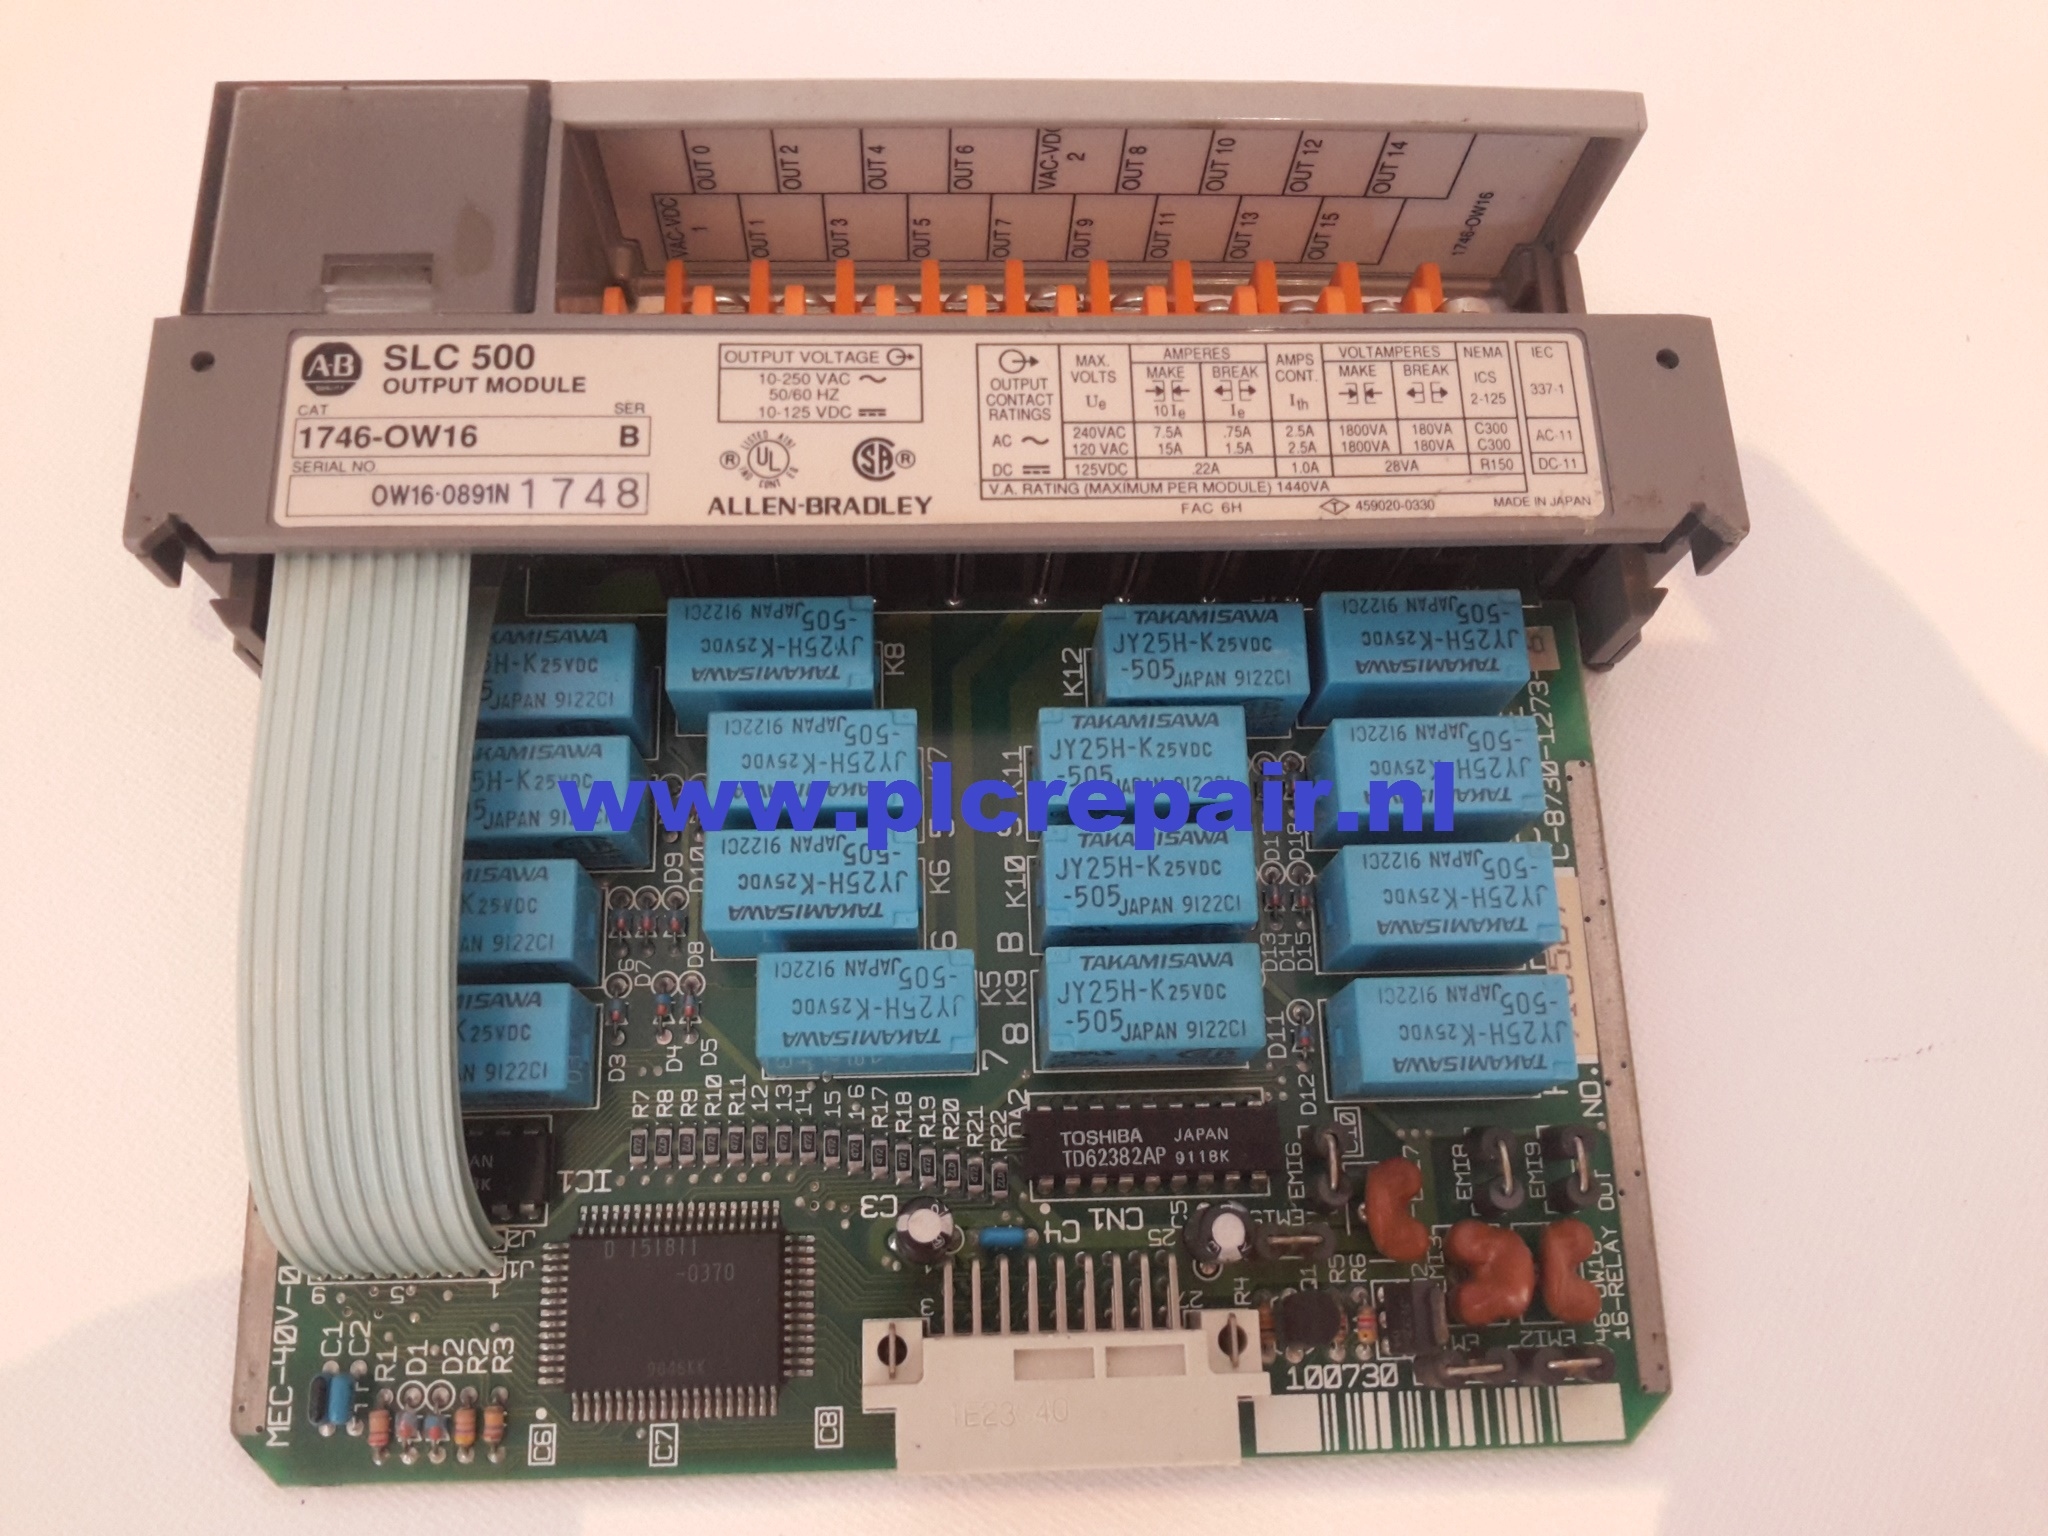 1746-OW16 SLC500 output module.